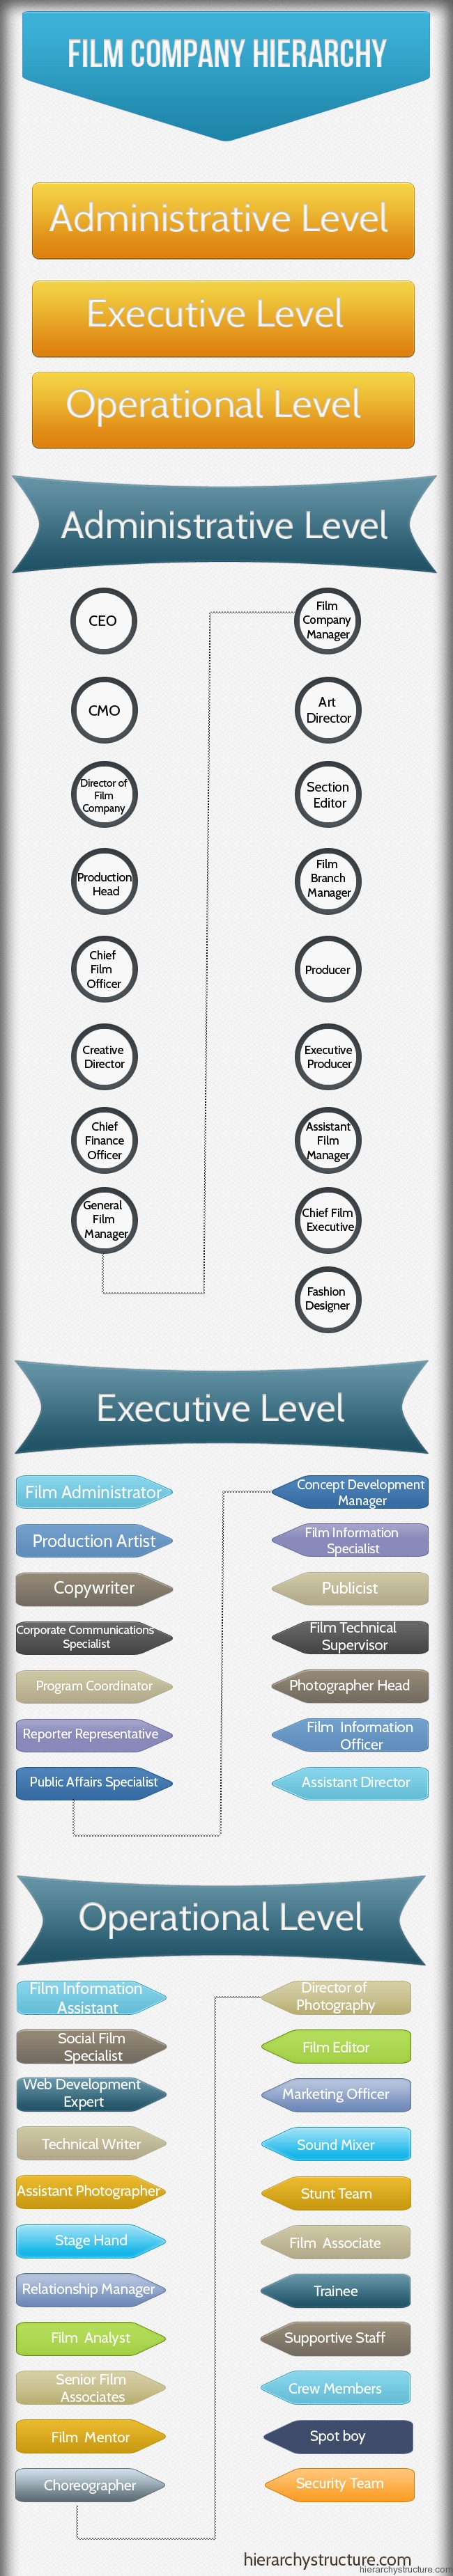 Film Company Hierarchy